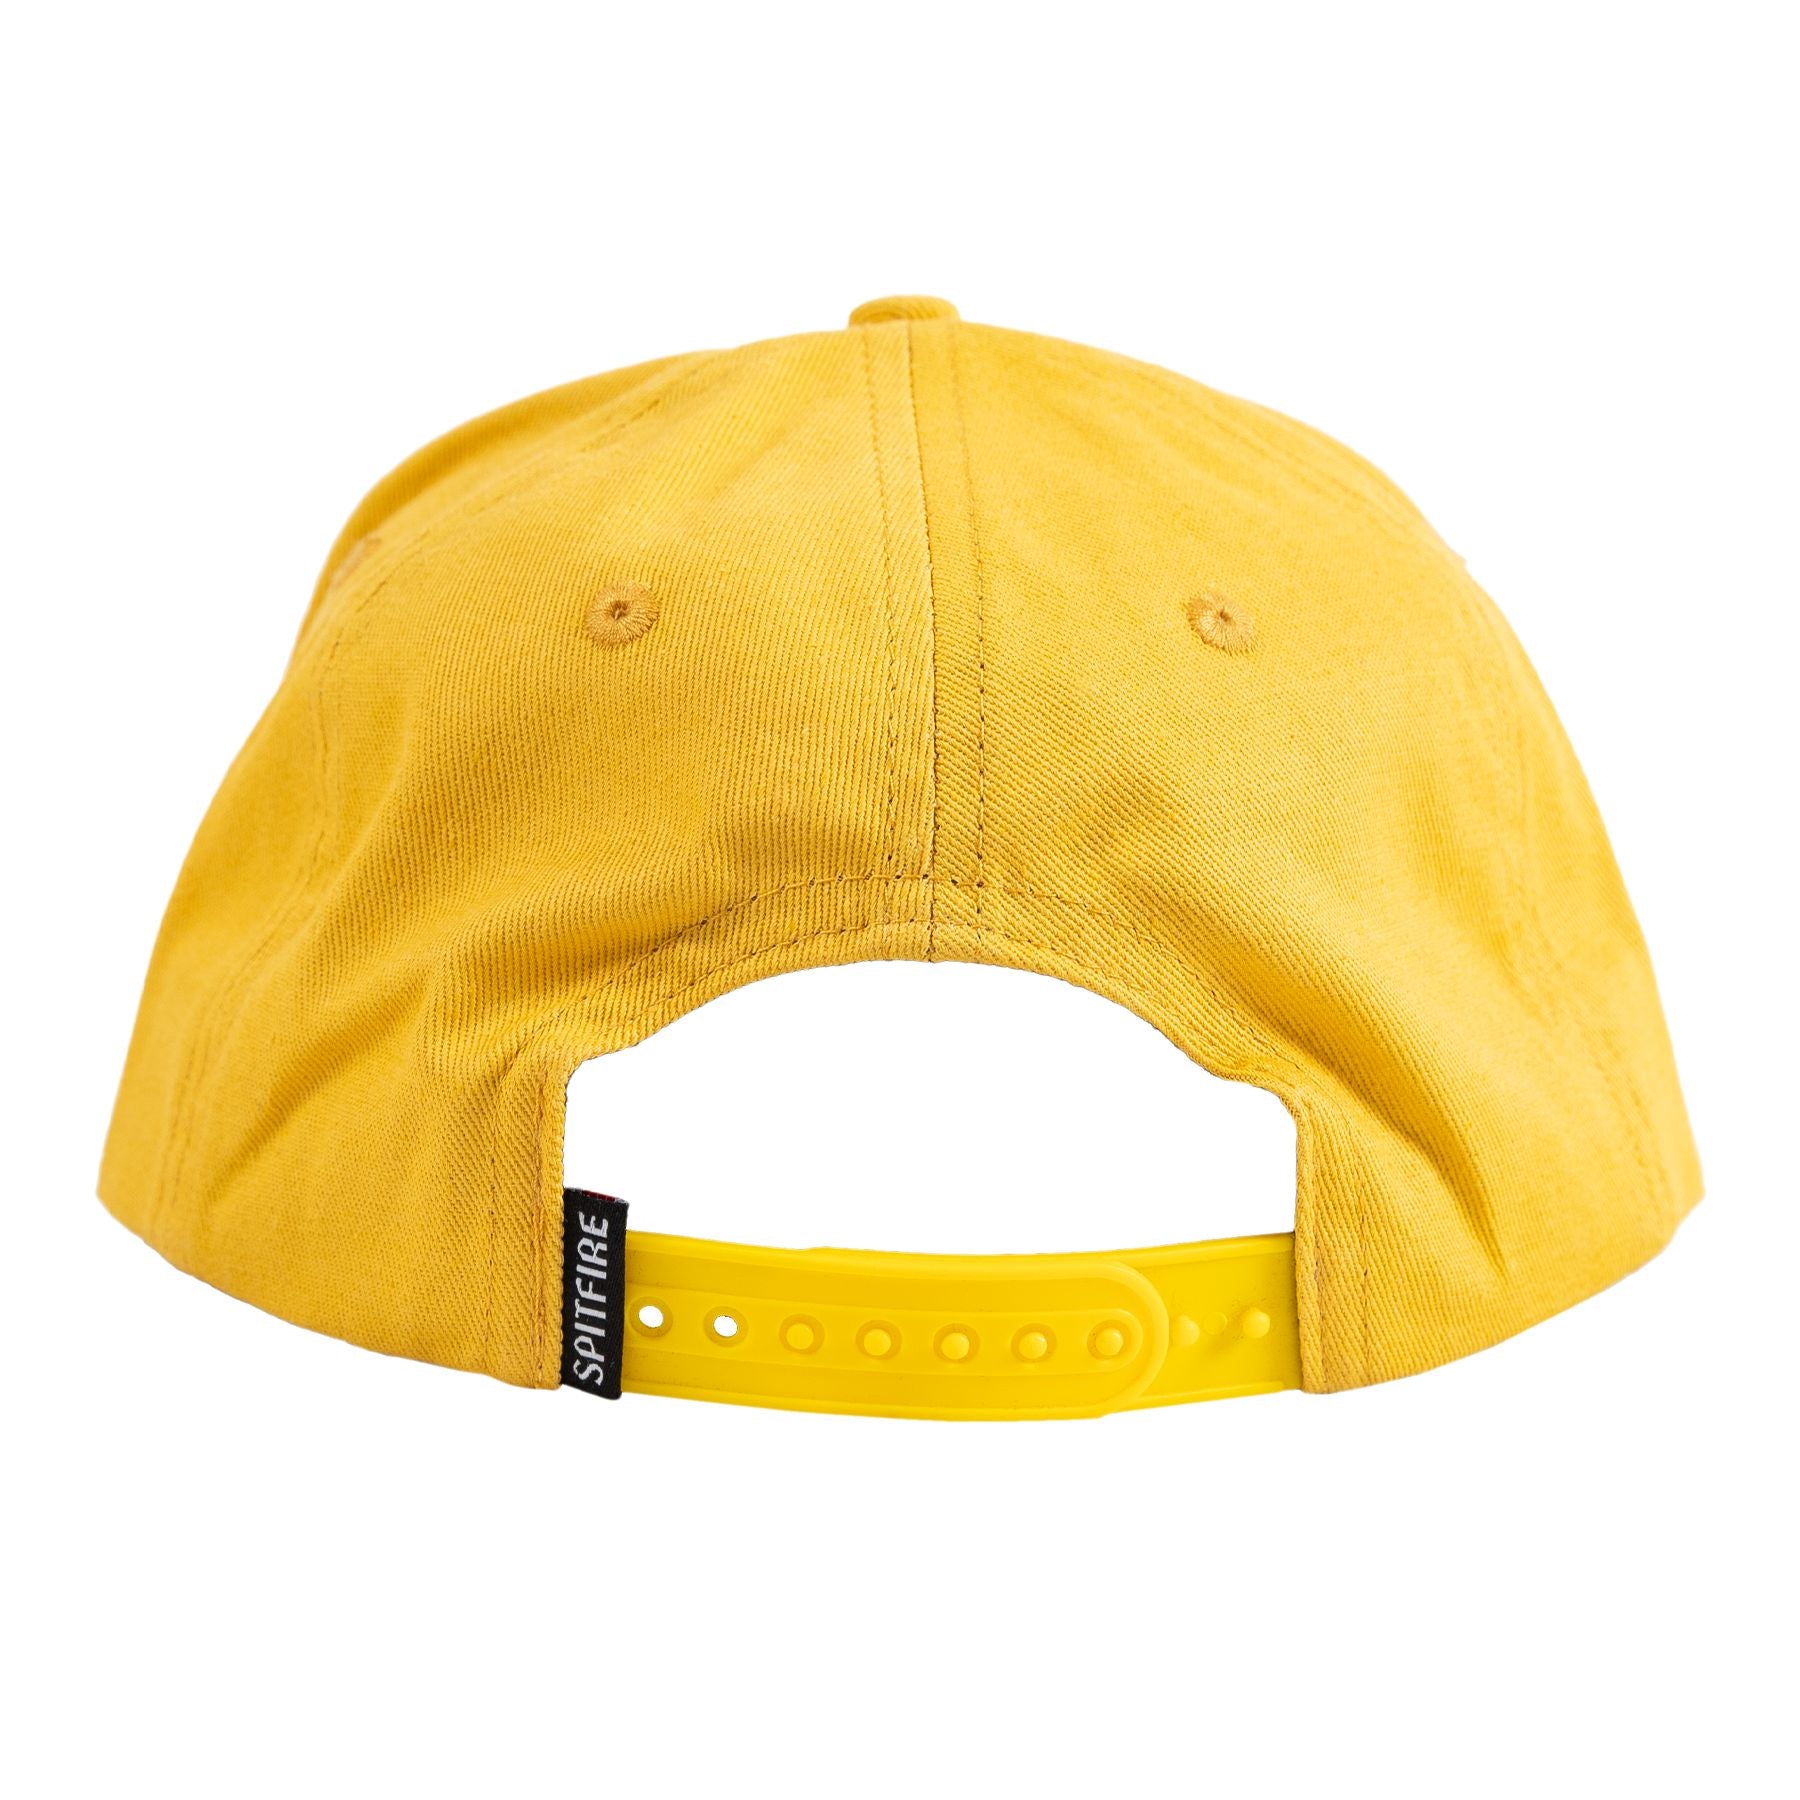 Gold/Black Bighead Spitfire Snapback Hat Back